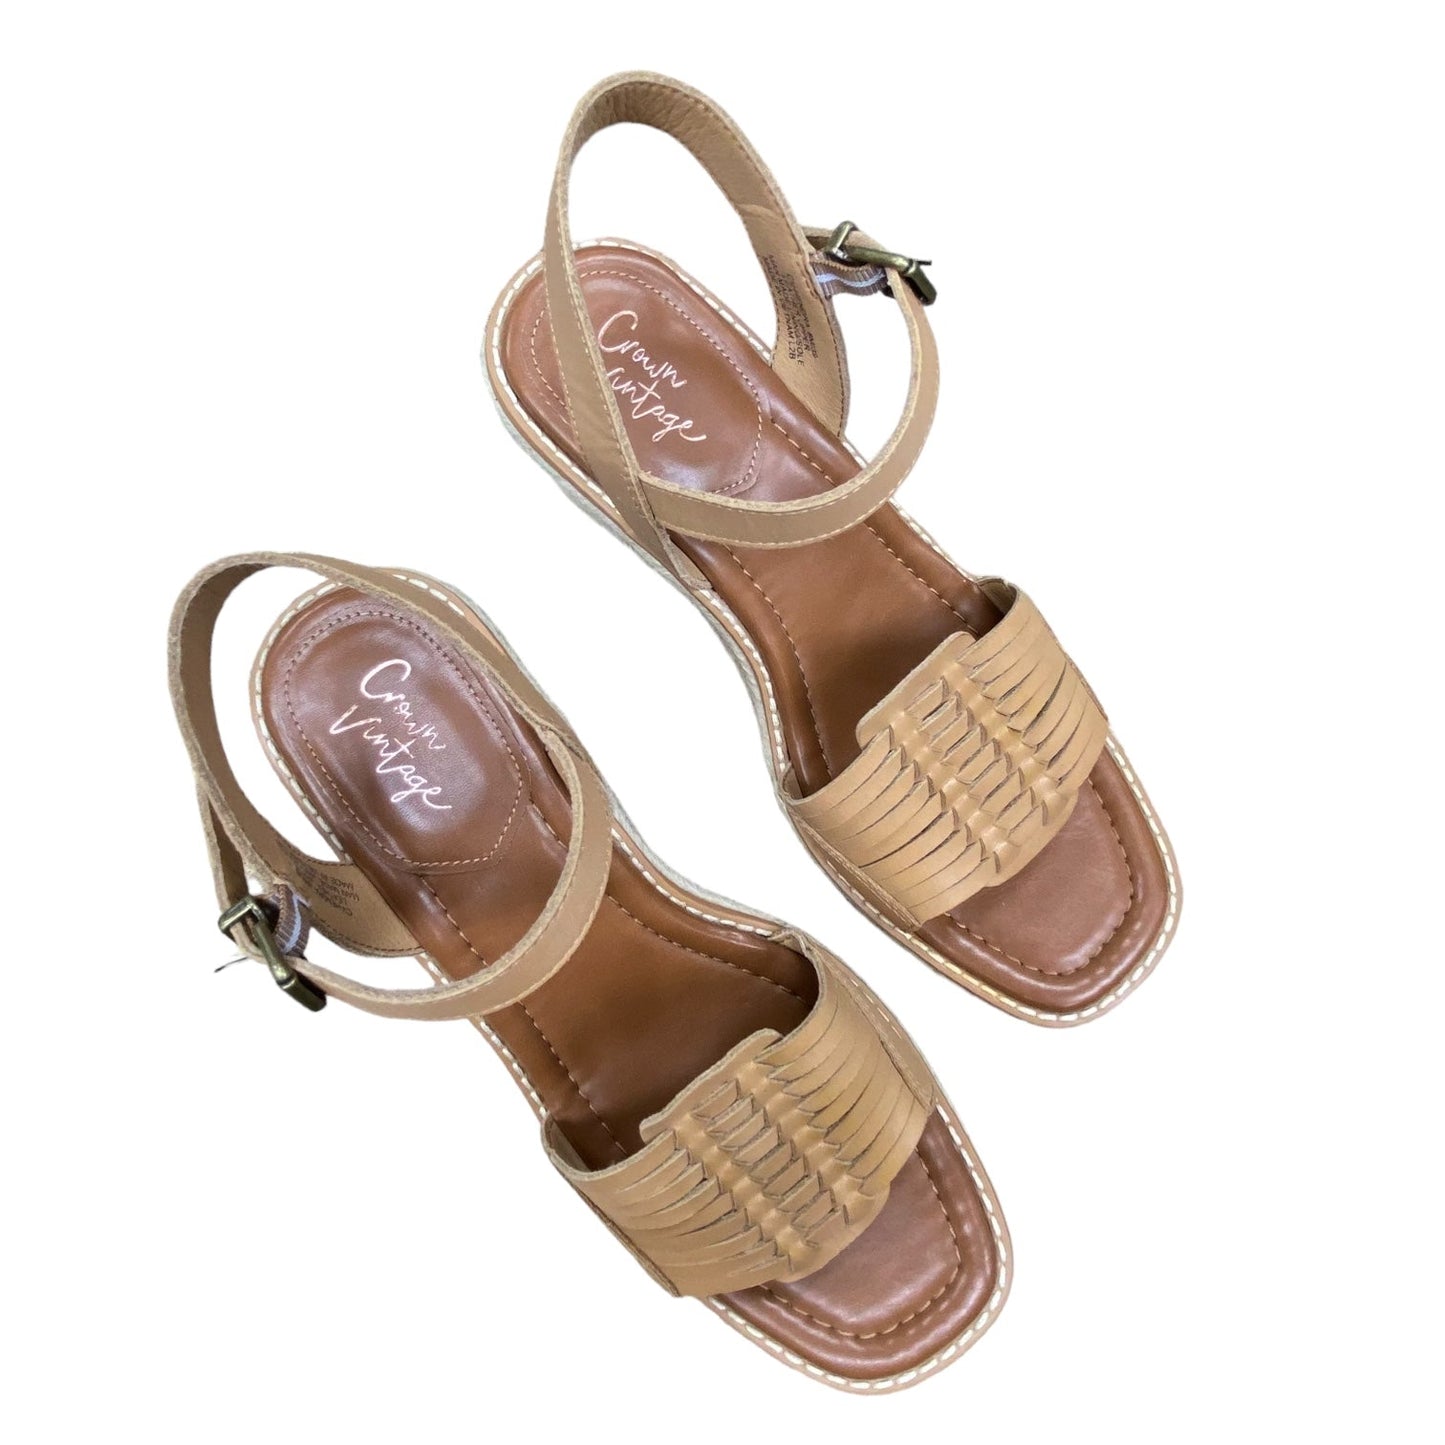 Sandals Heels Wedge By Crown Vintage  Size: 8